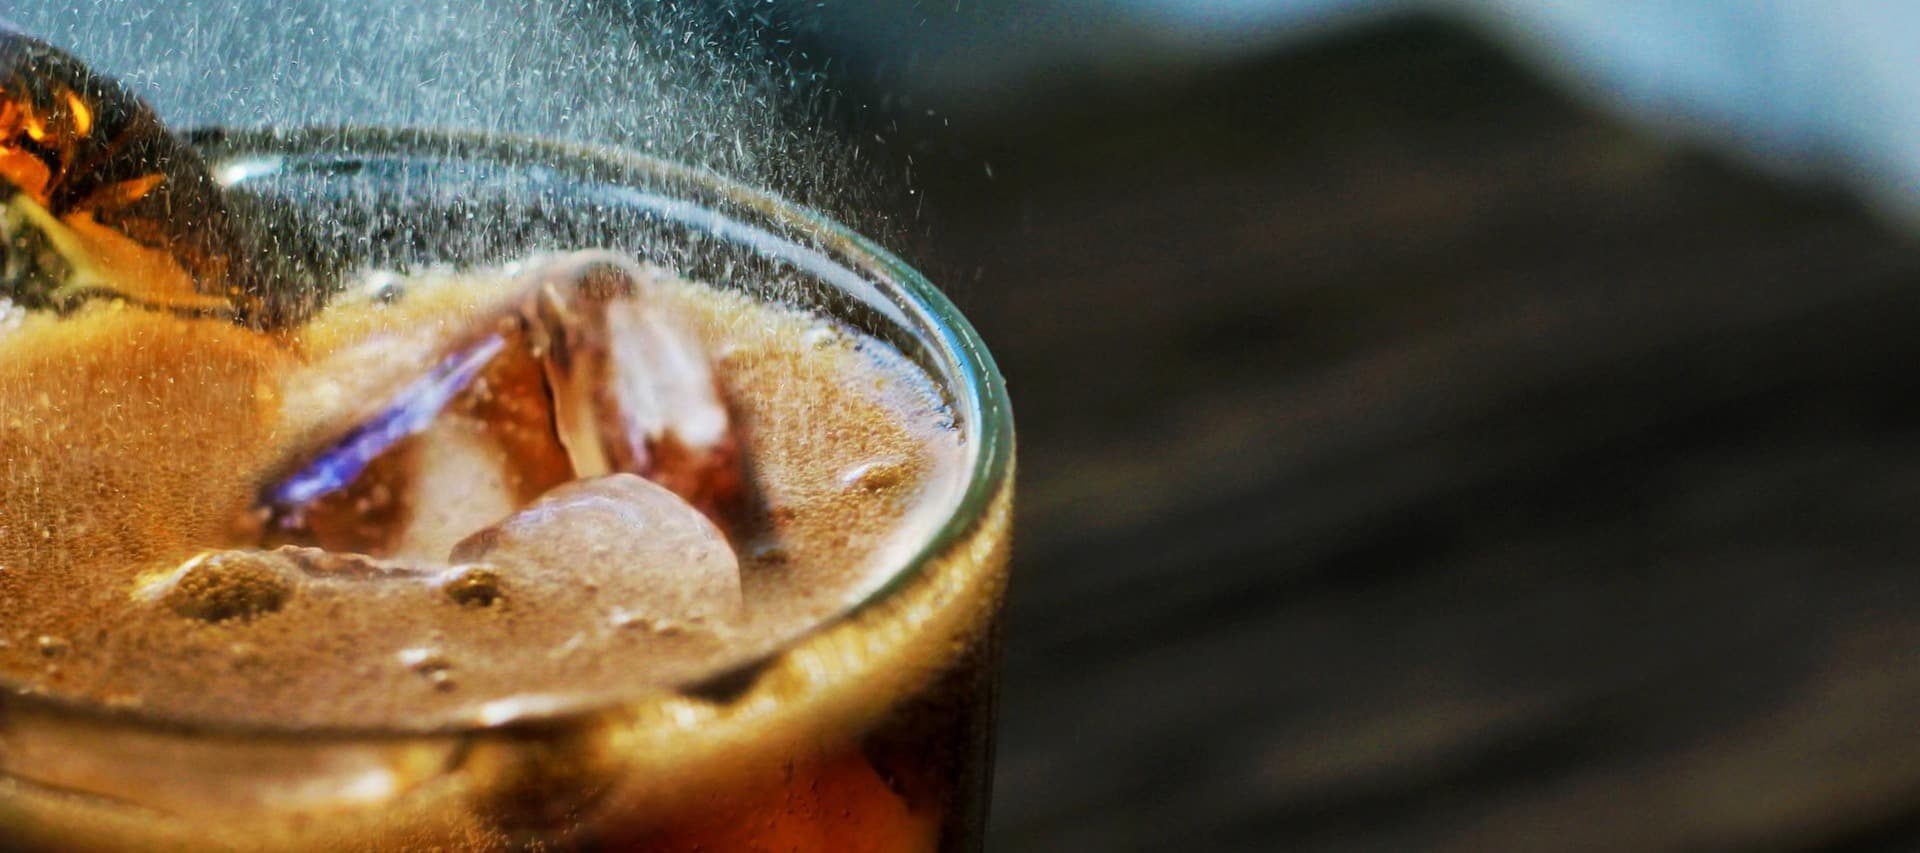 Фото новости: "«Очаково» выпустил аналог Сoca-Cola с суслом и солодом"